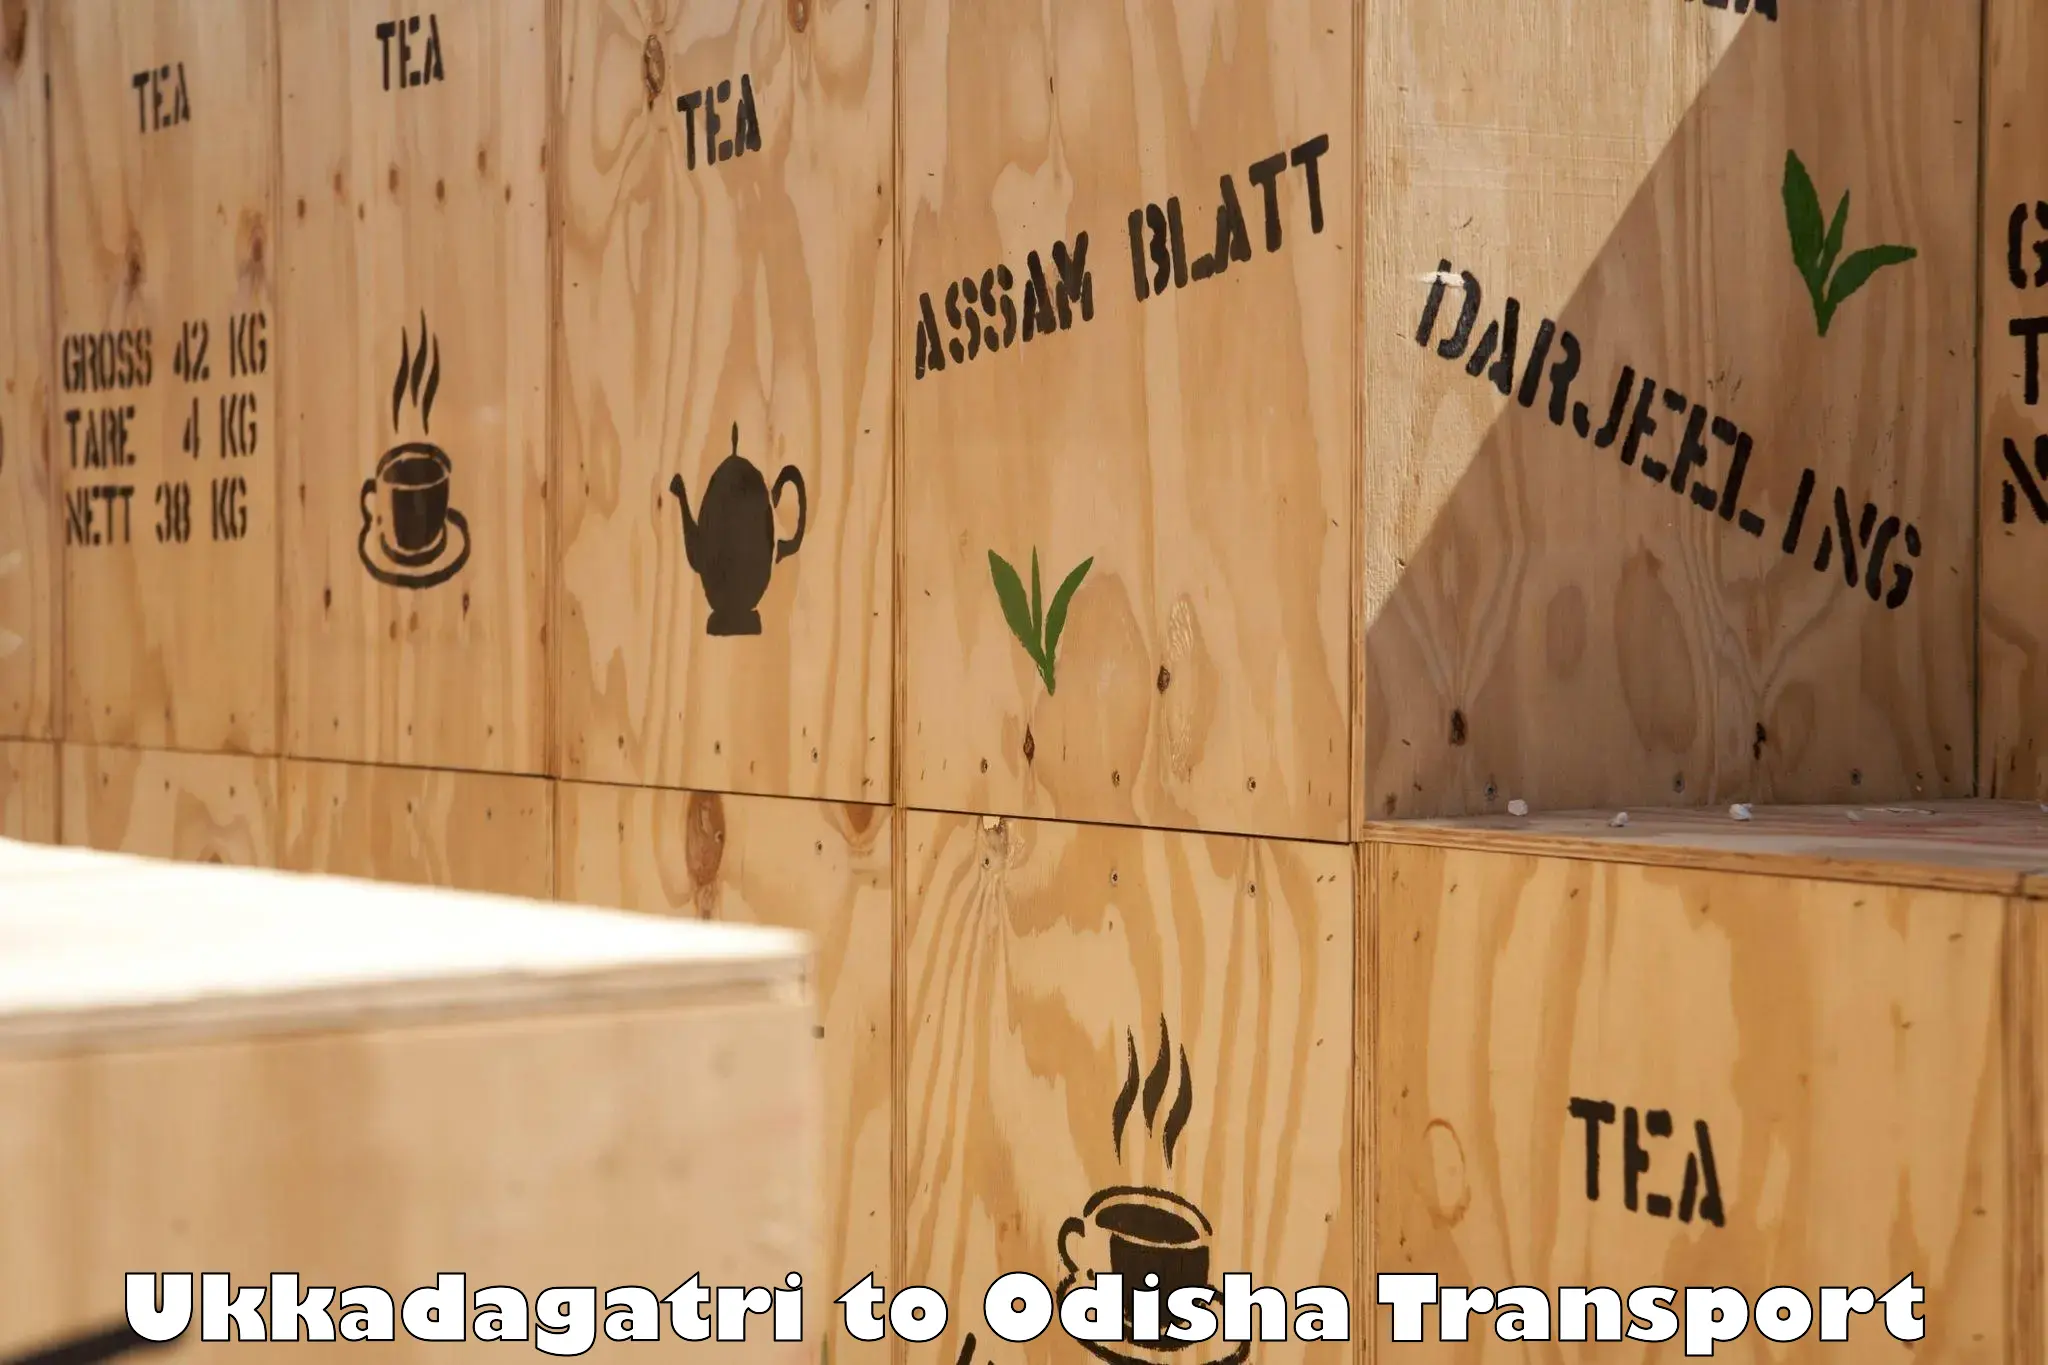 Transport in sharing Ukkadagatri to Dandisahi